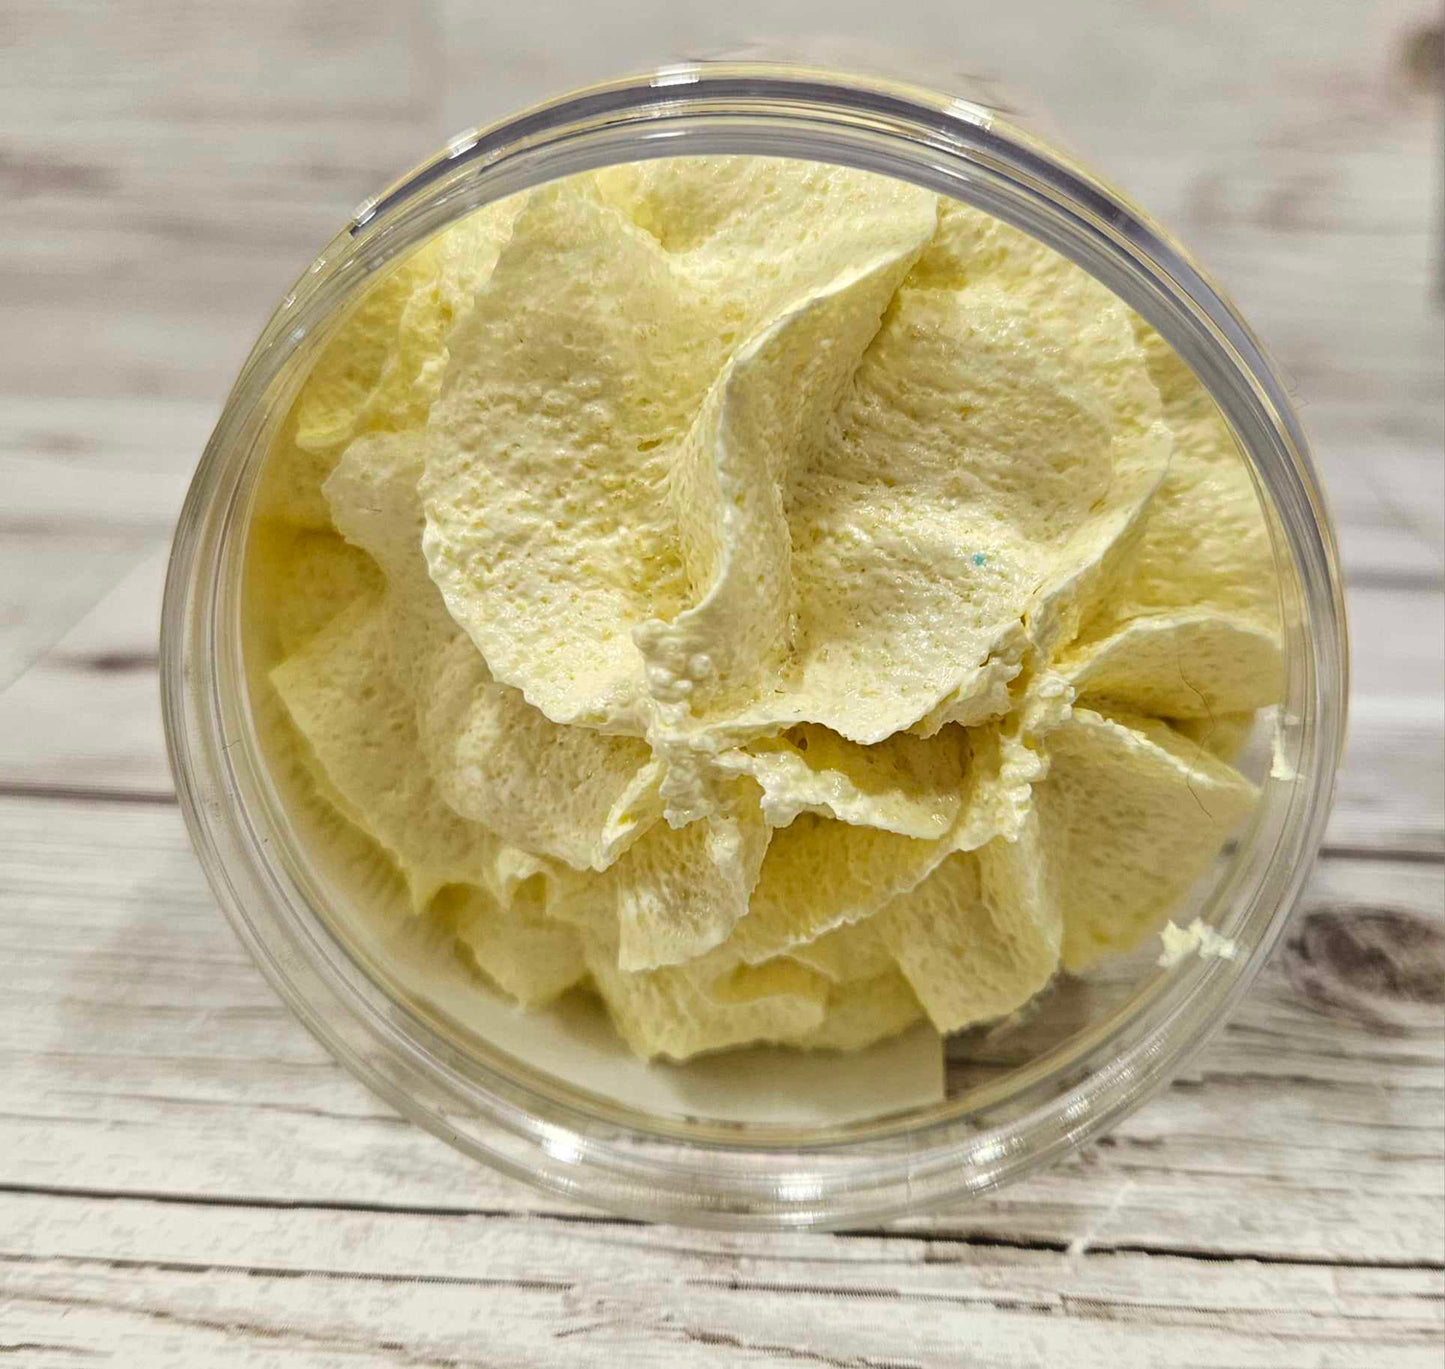 'Lemon Sherbet' Foaming Body Sugar Scrub-150g